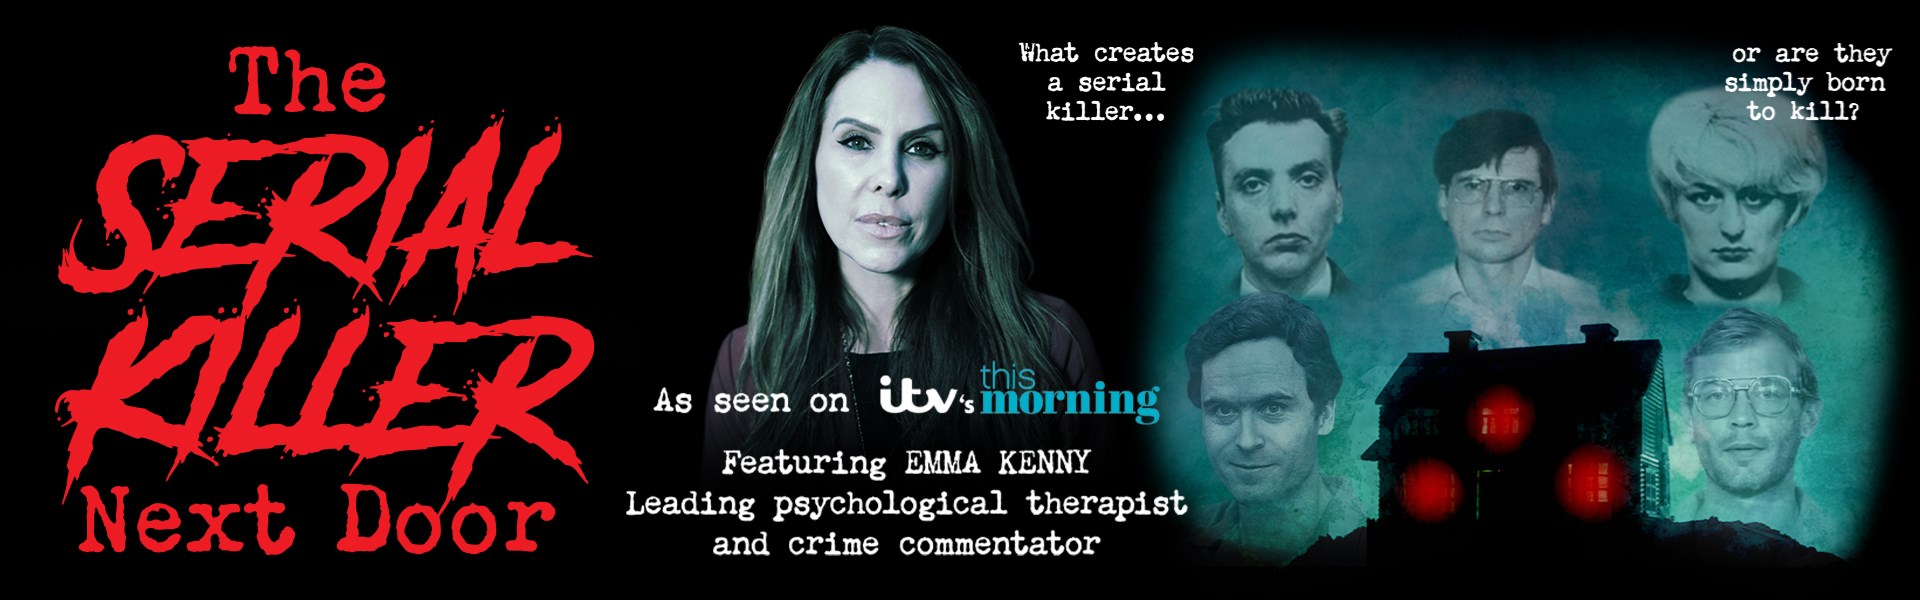 Emma Kenny - The Serial Killer Next Door